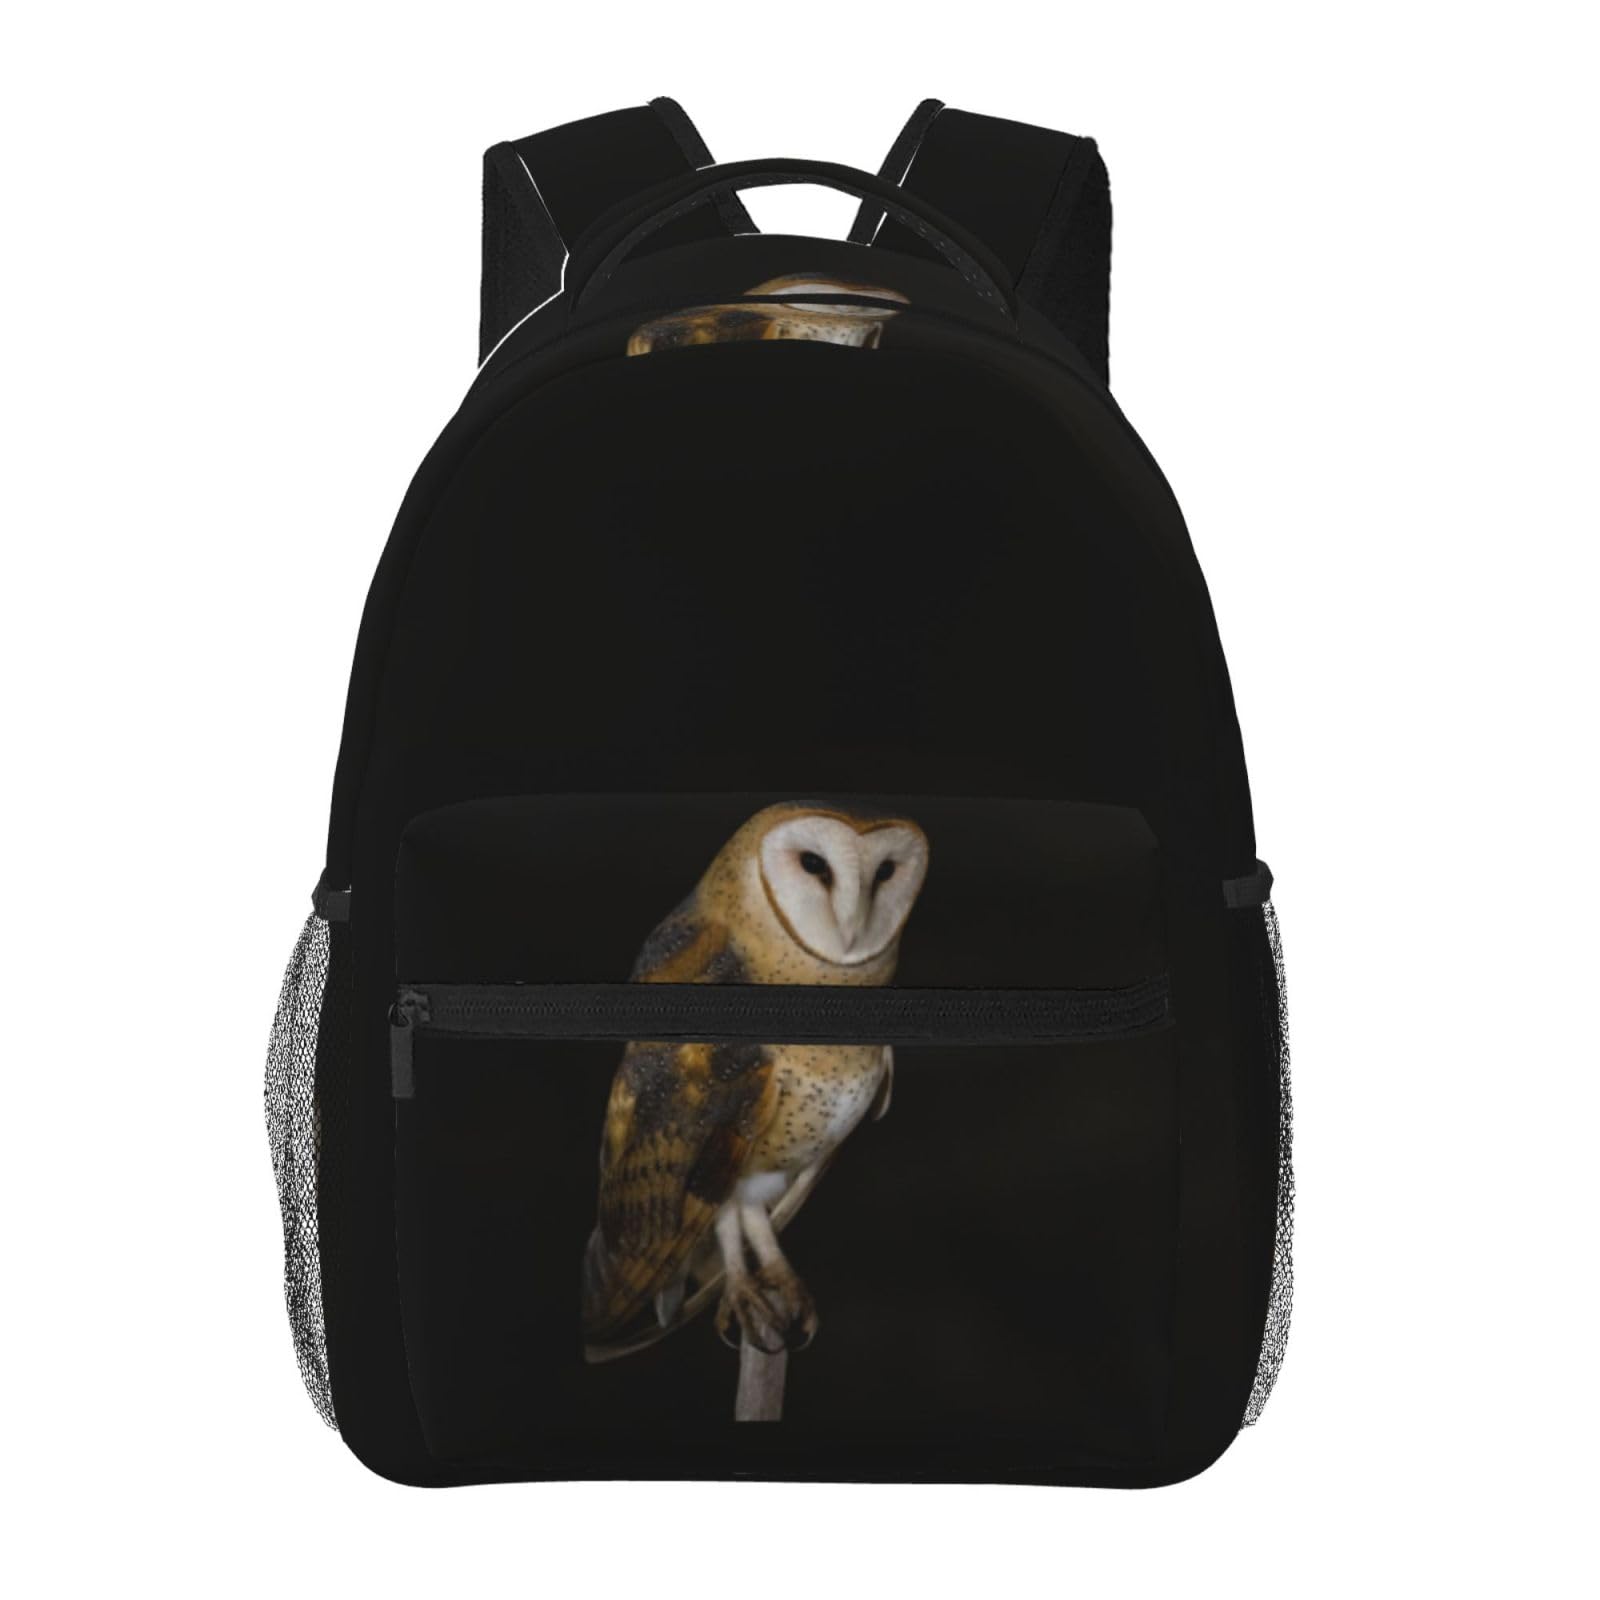 送料無料Owl In The Dark Printed Laptop Backpack Fashion Lightweight Ergonomic Backpacks Casual Travel Daypack For Women M